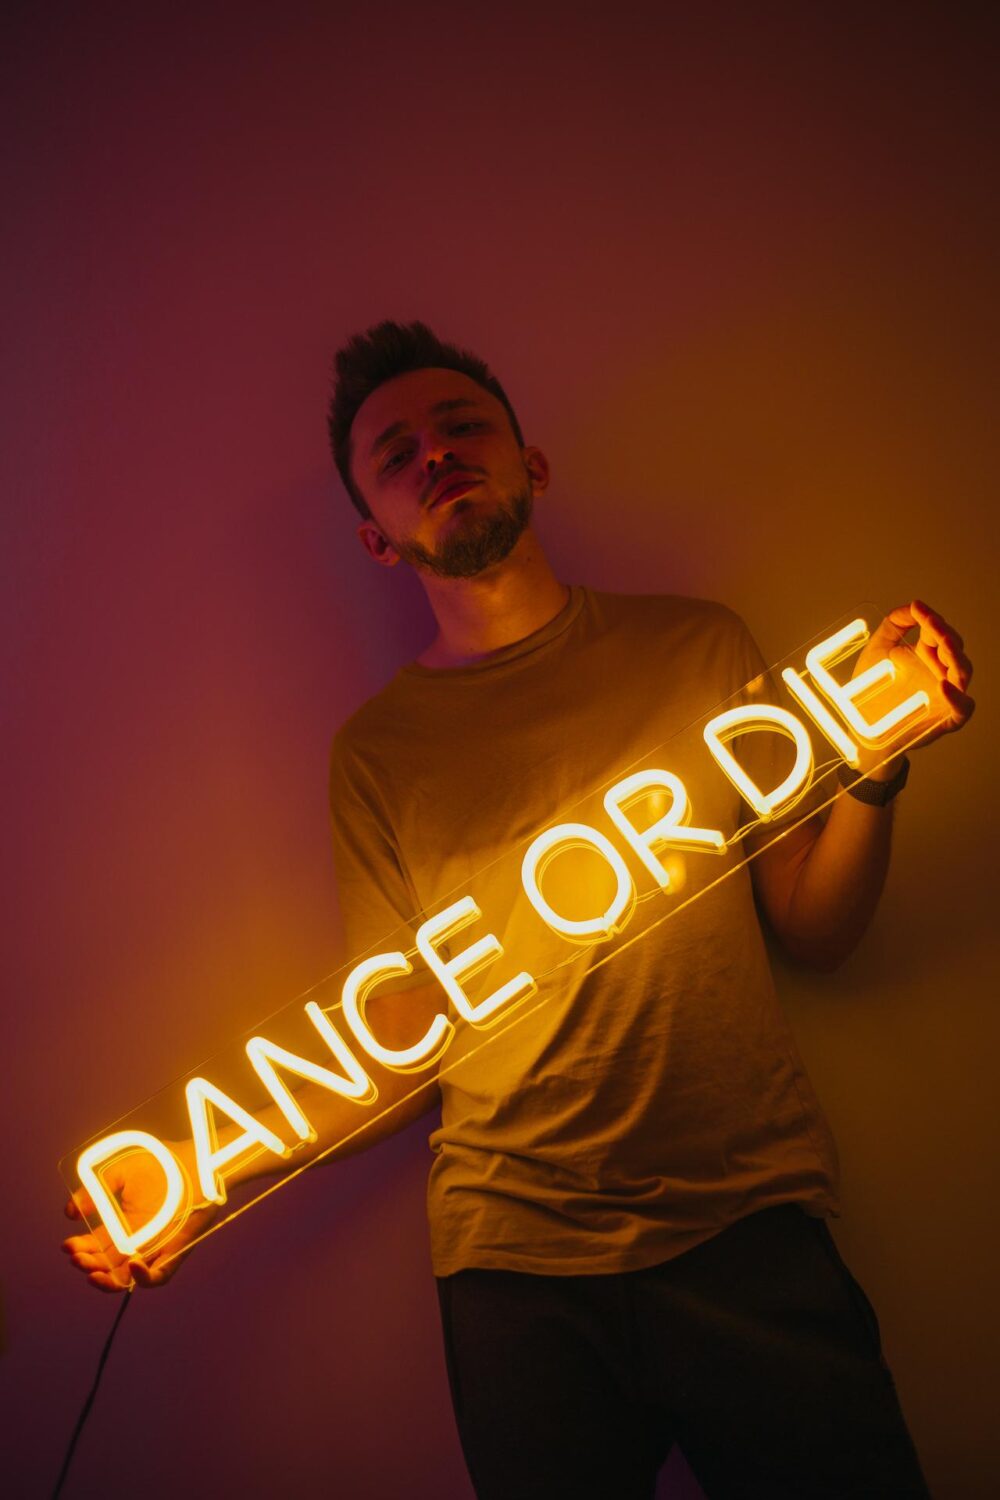 Парень, держащий желтую неоновую надпись "Dance or die" 3